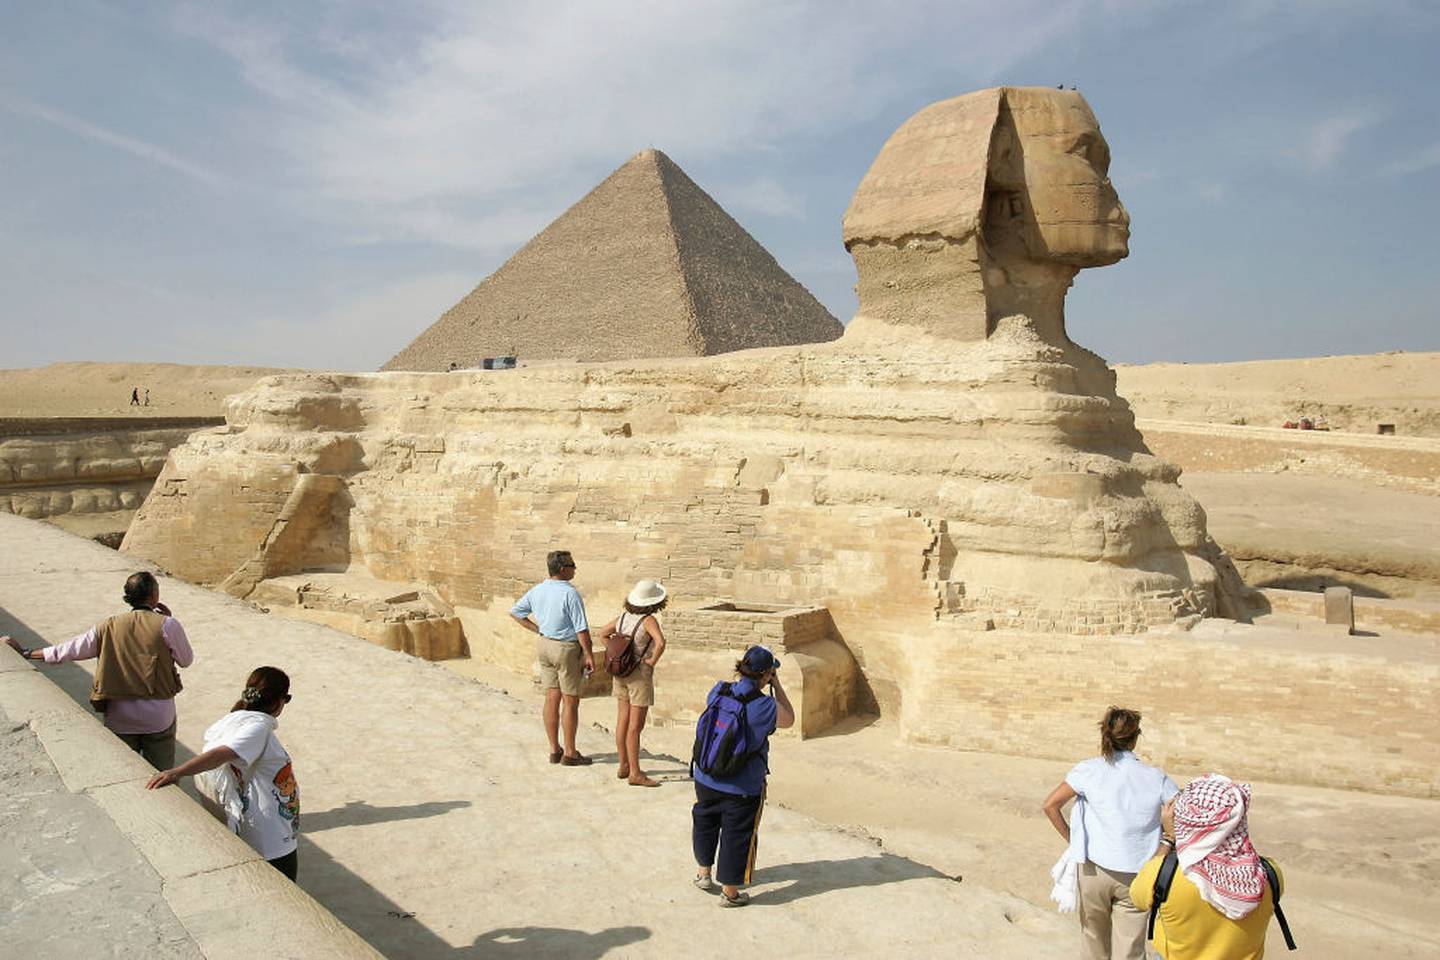 La pirámide de Khufu en Egipto es una de las maravillas arquitectónicas más reconocidas en todo el mundo